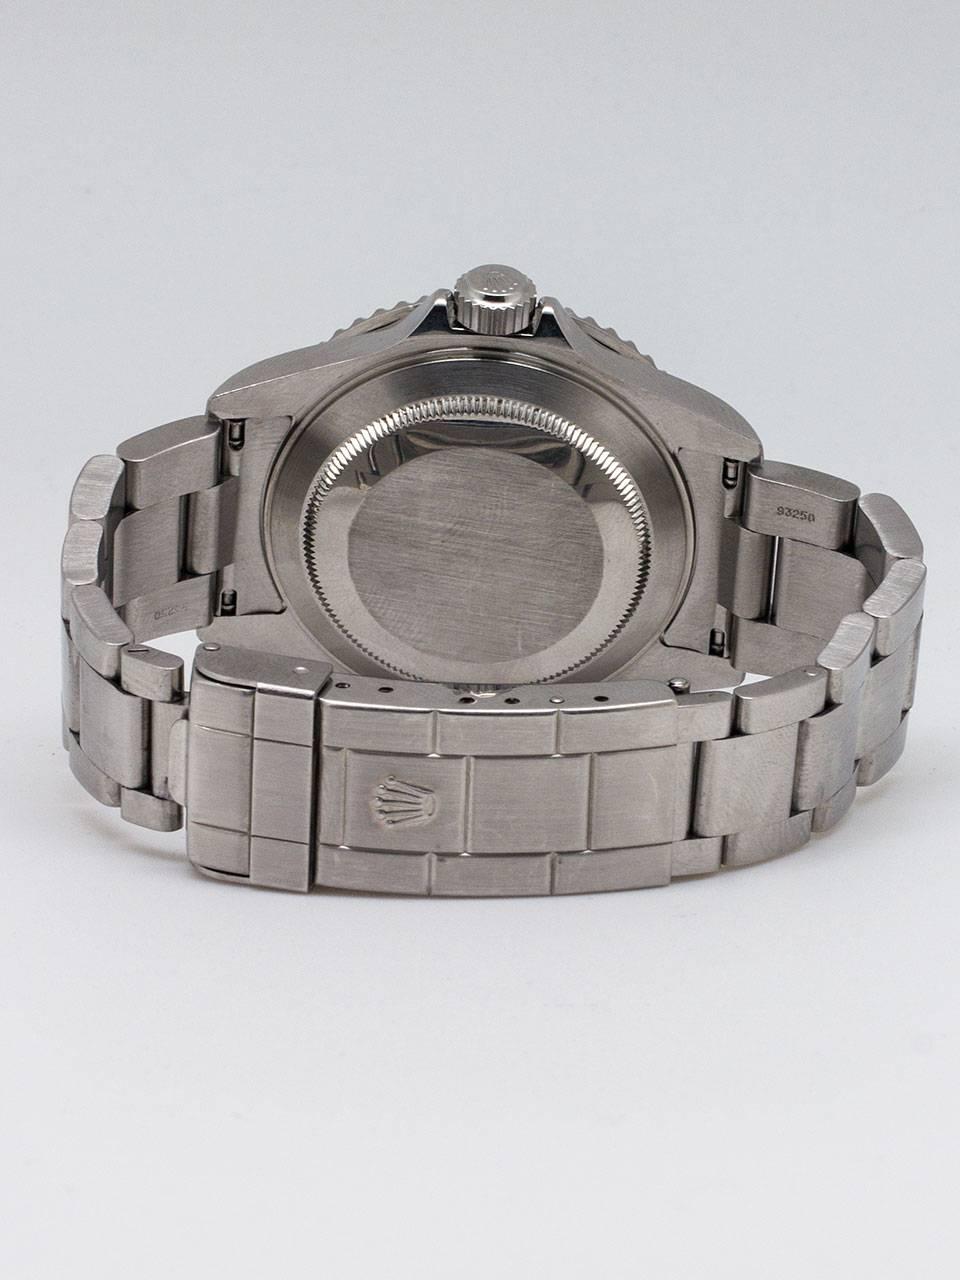 Men's Rolex Stainless Steel Anniversary Submariner Wristwatch ref 16610T